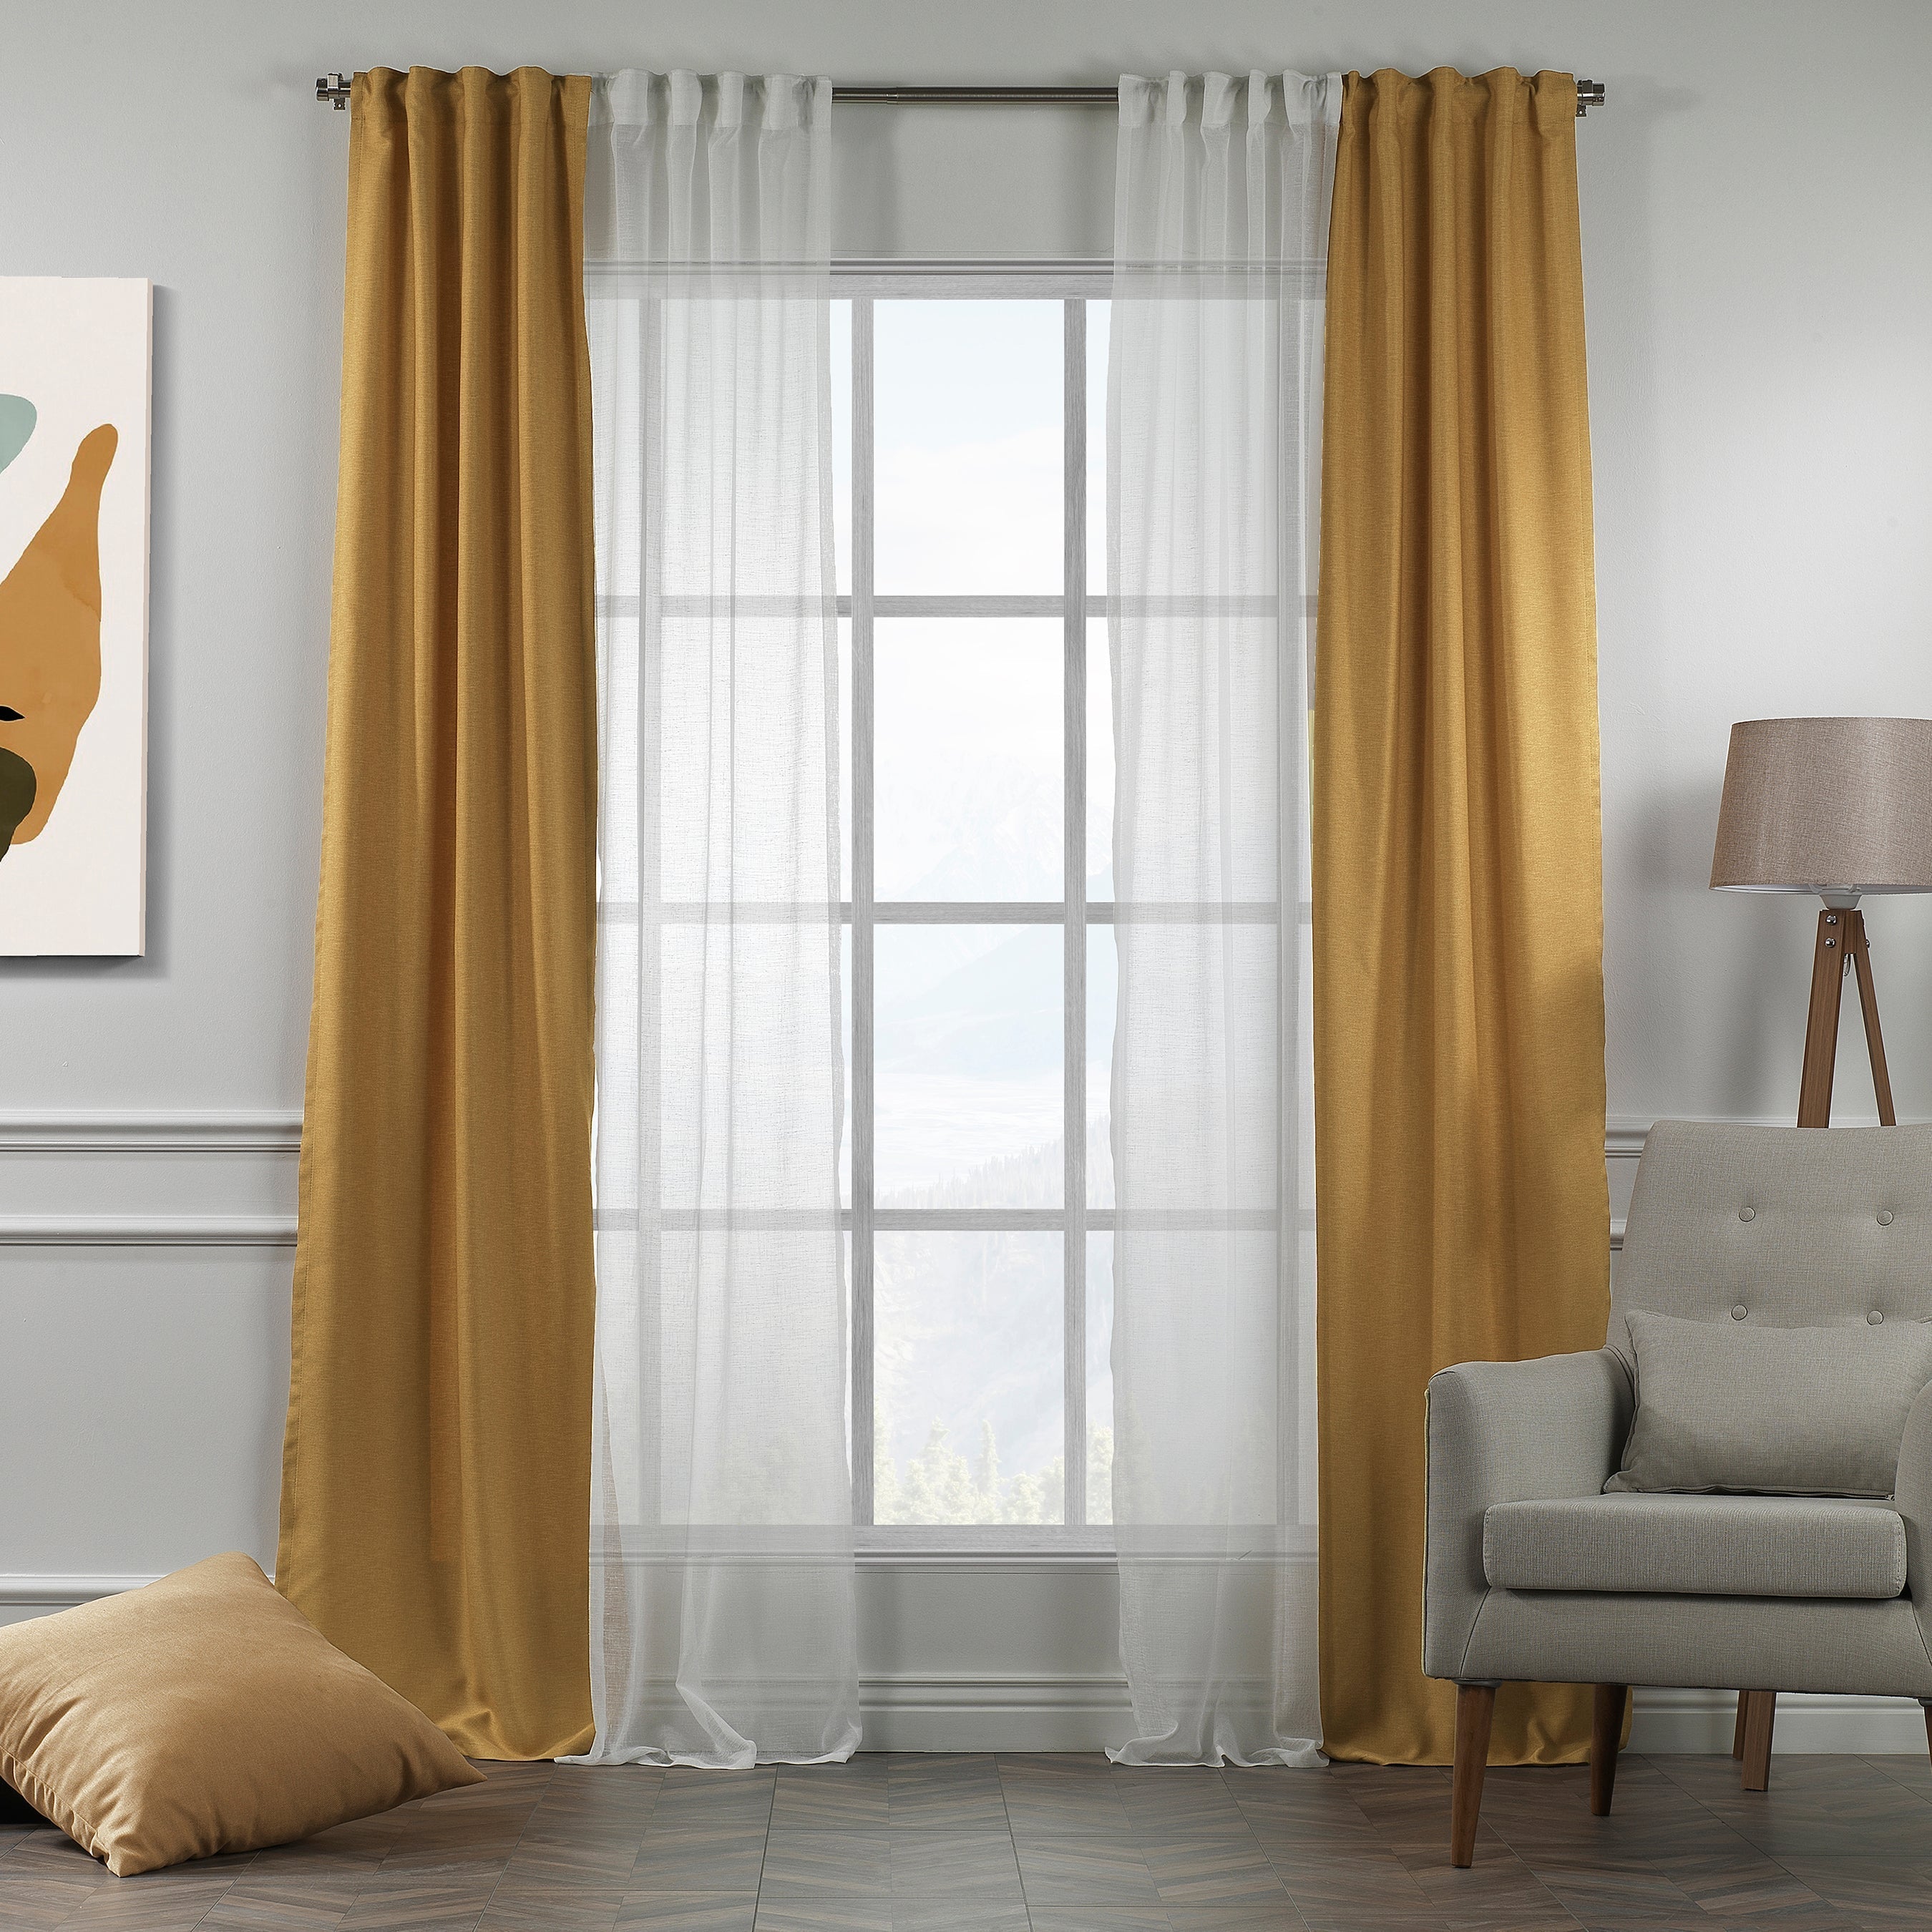 Luxury Panel Curtains Bedroom Vintage Rod Pocket Window Curtain Solid